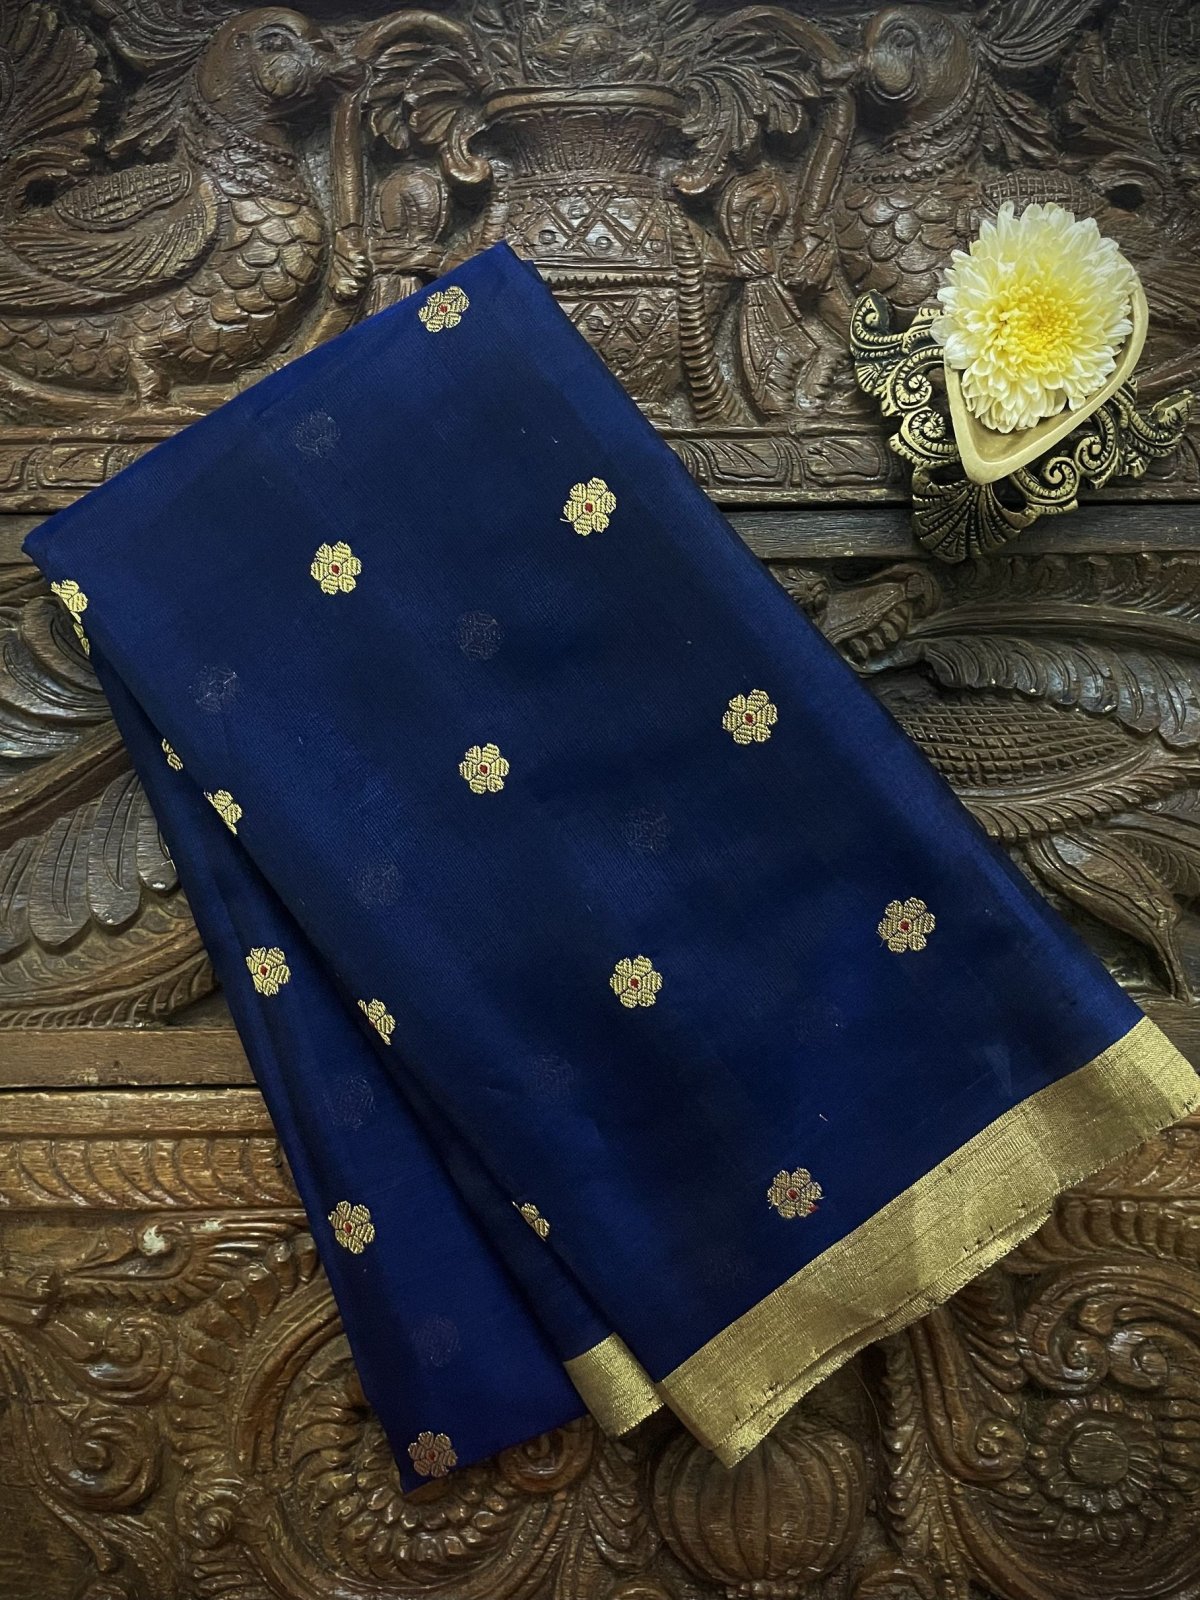 Dark Blue Chanderi Silk Blouse With Gold Zari Floral Motifs